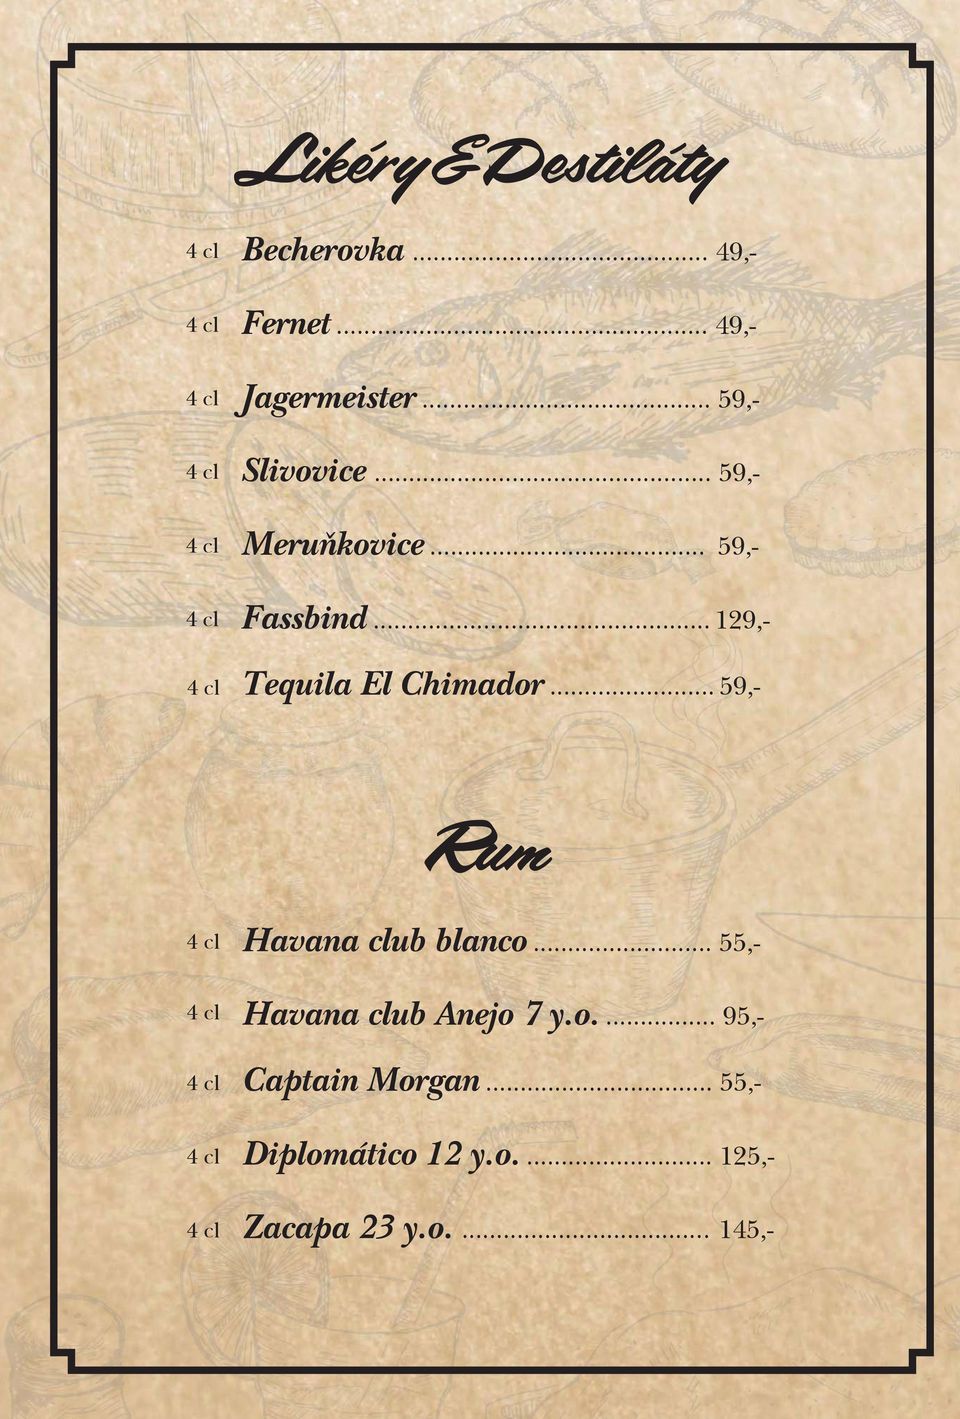 .. 129,- Tequila El Chimador... 59,- Rum Havana club blanco.